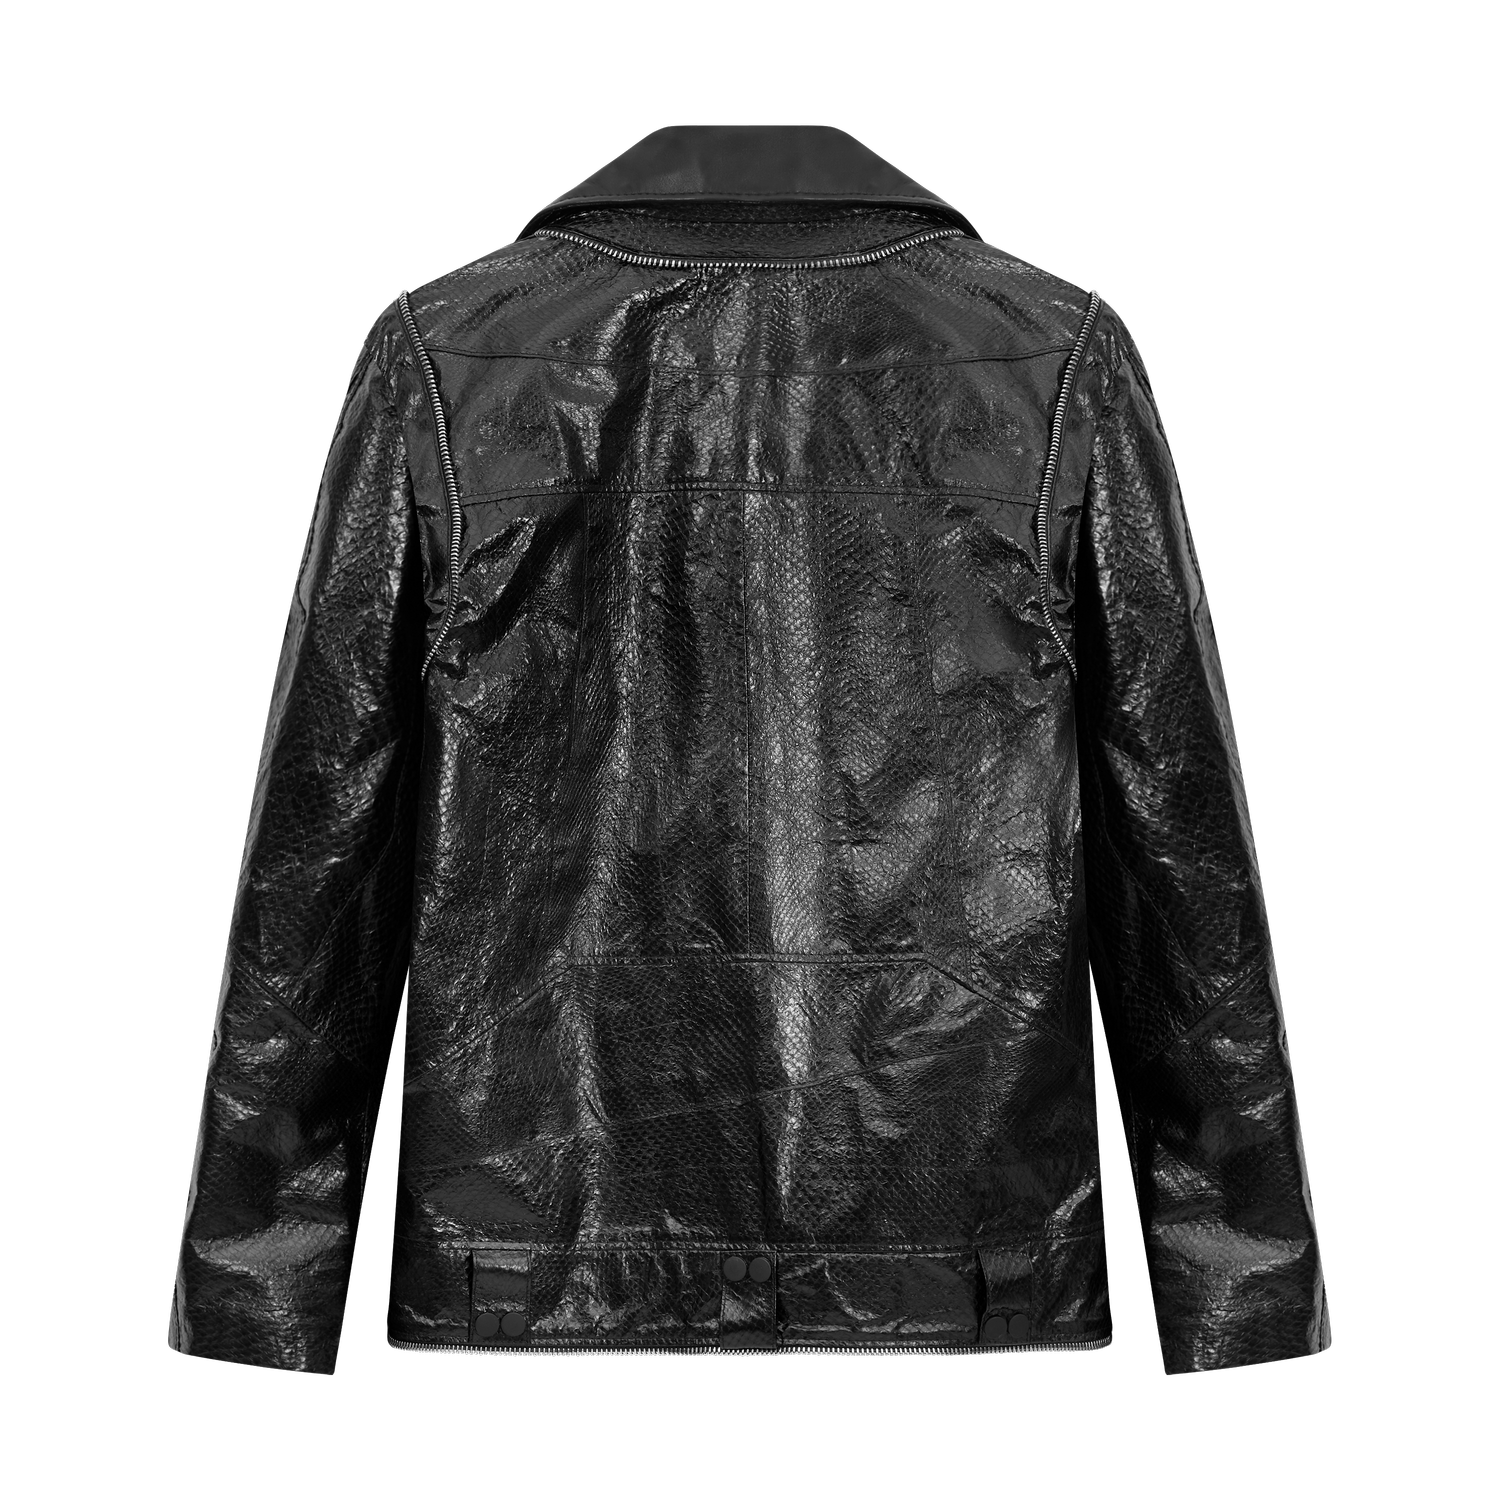 Leather jacket - Brooklyn by Martin Key